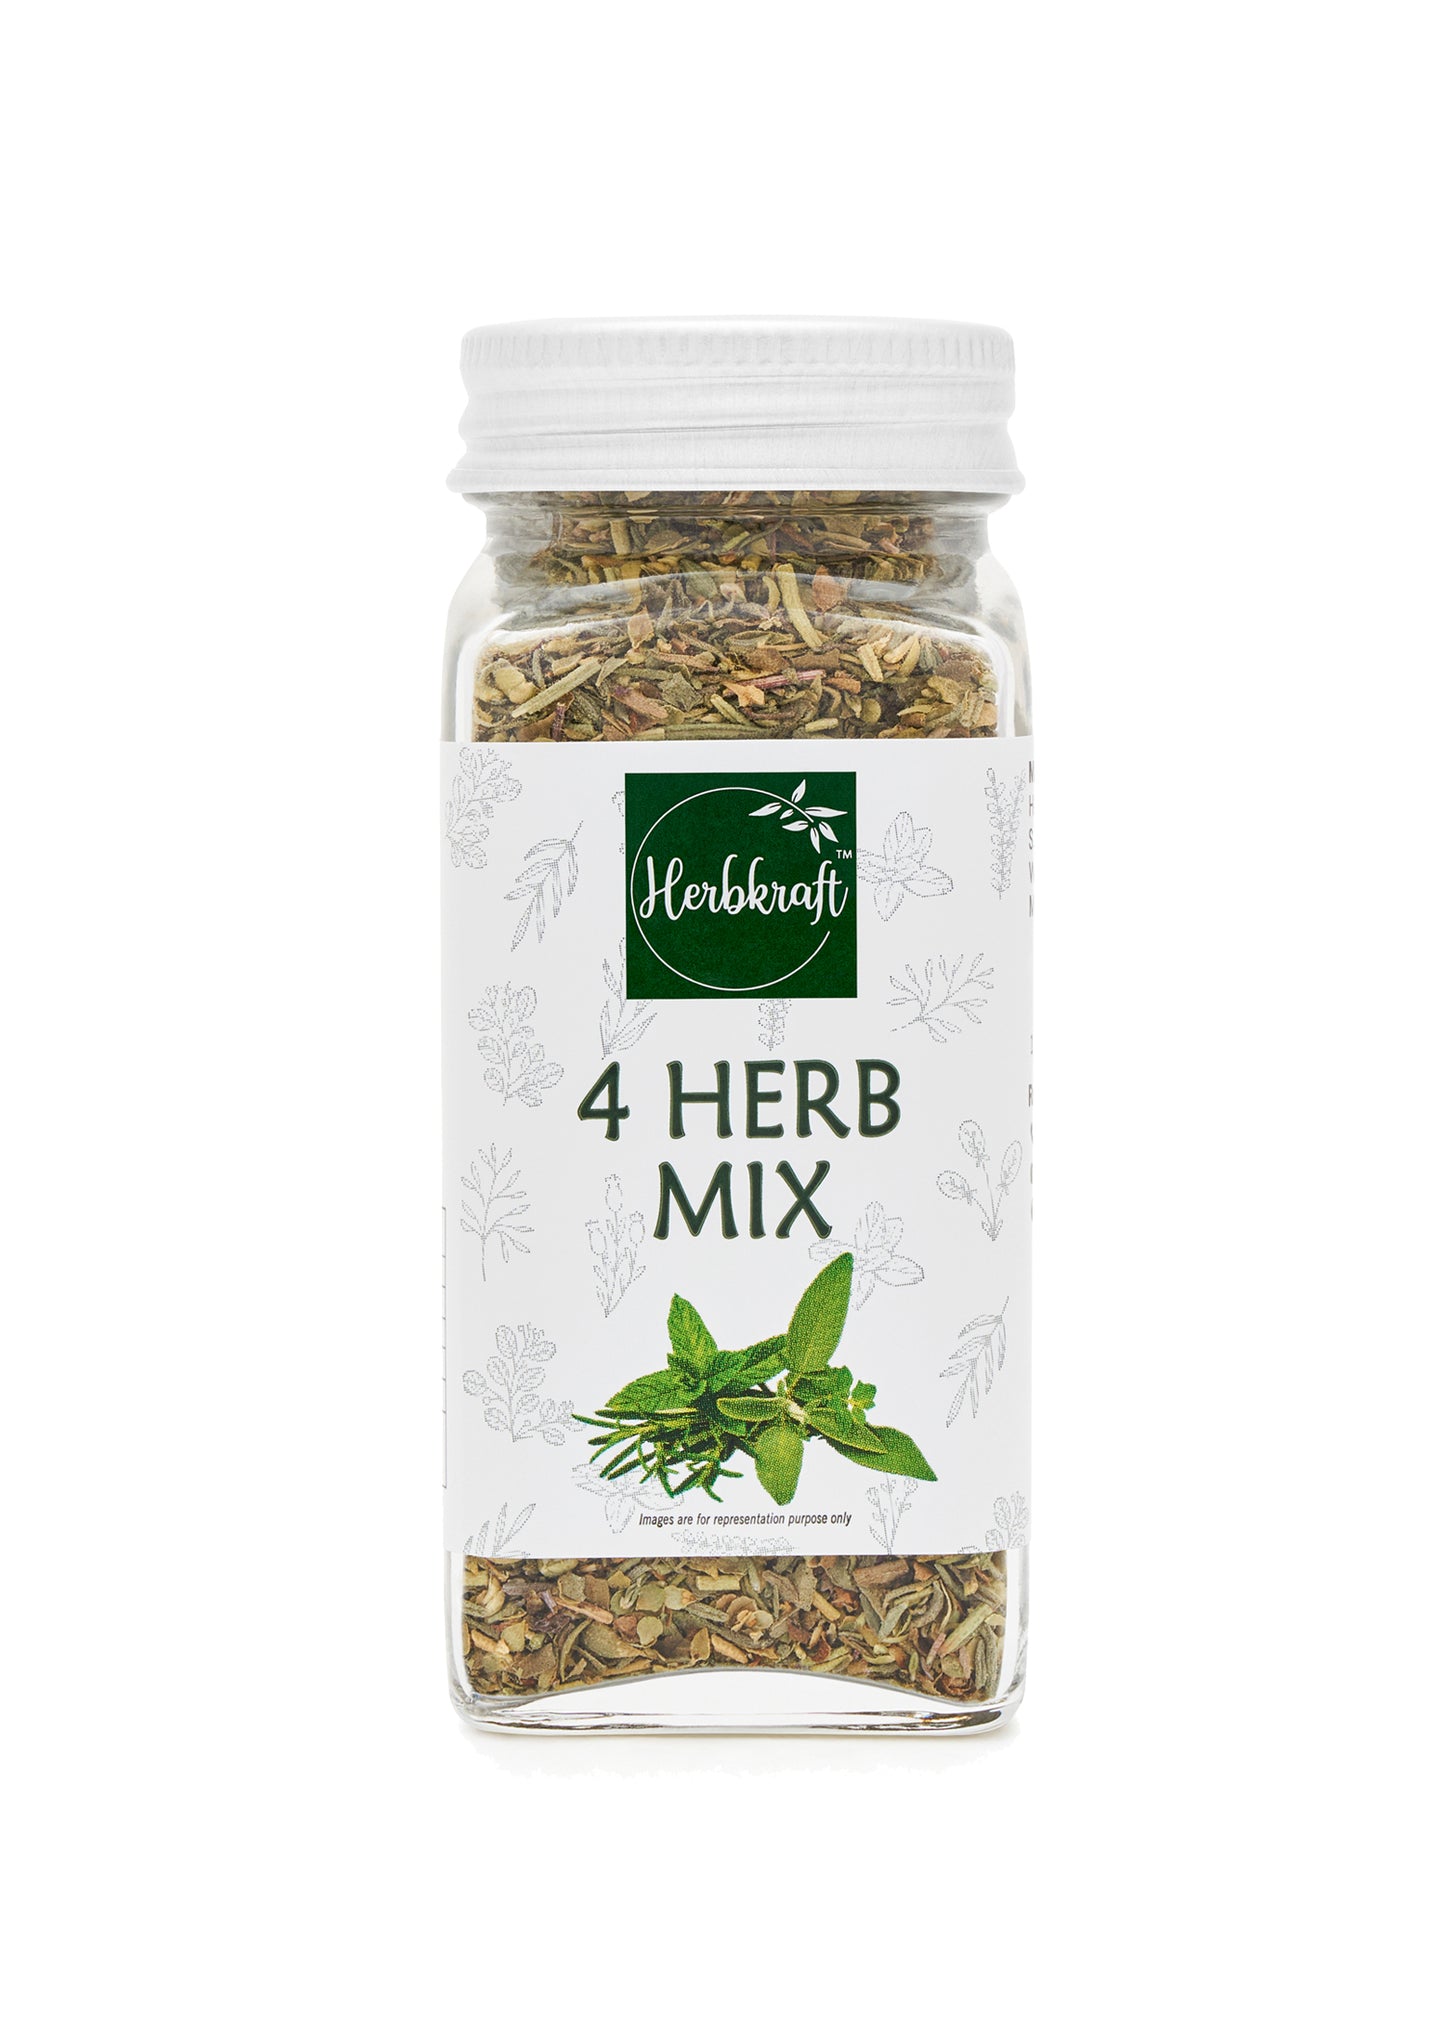 Herbkraft 4 Herb Mix